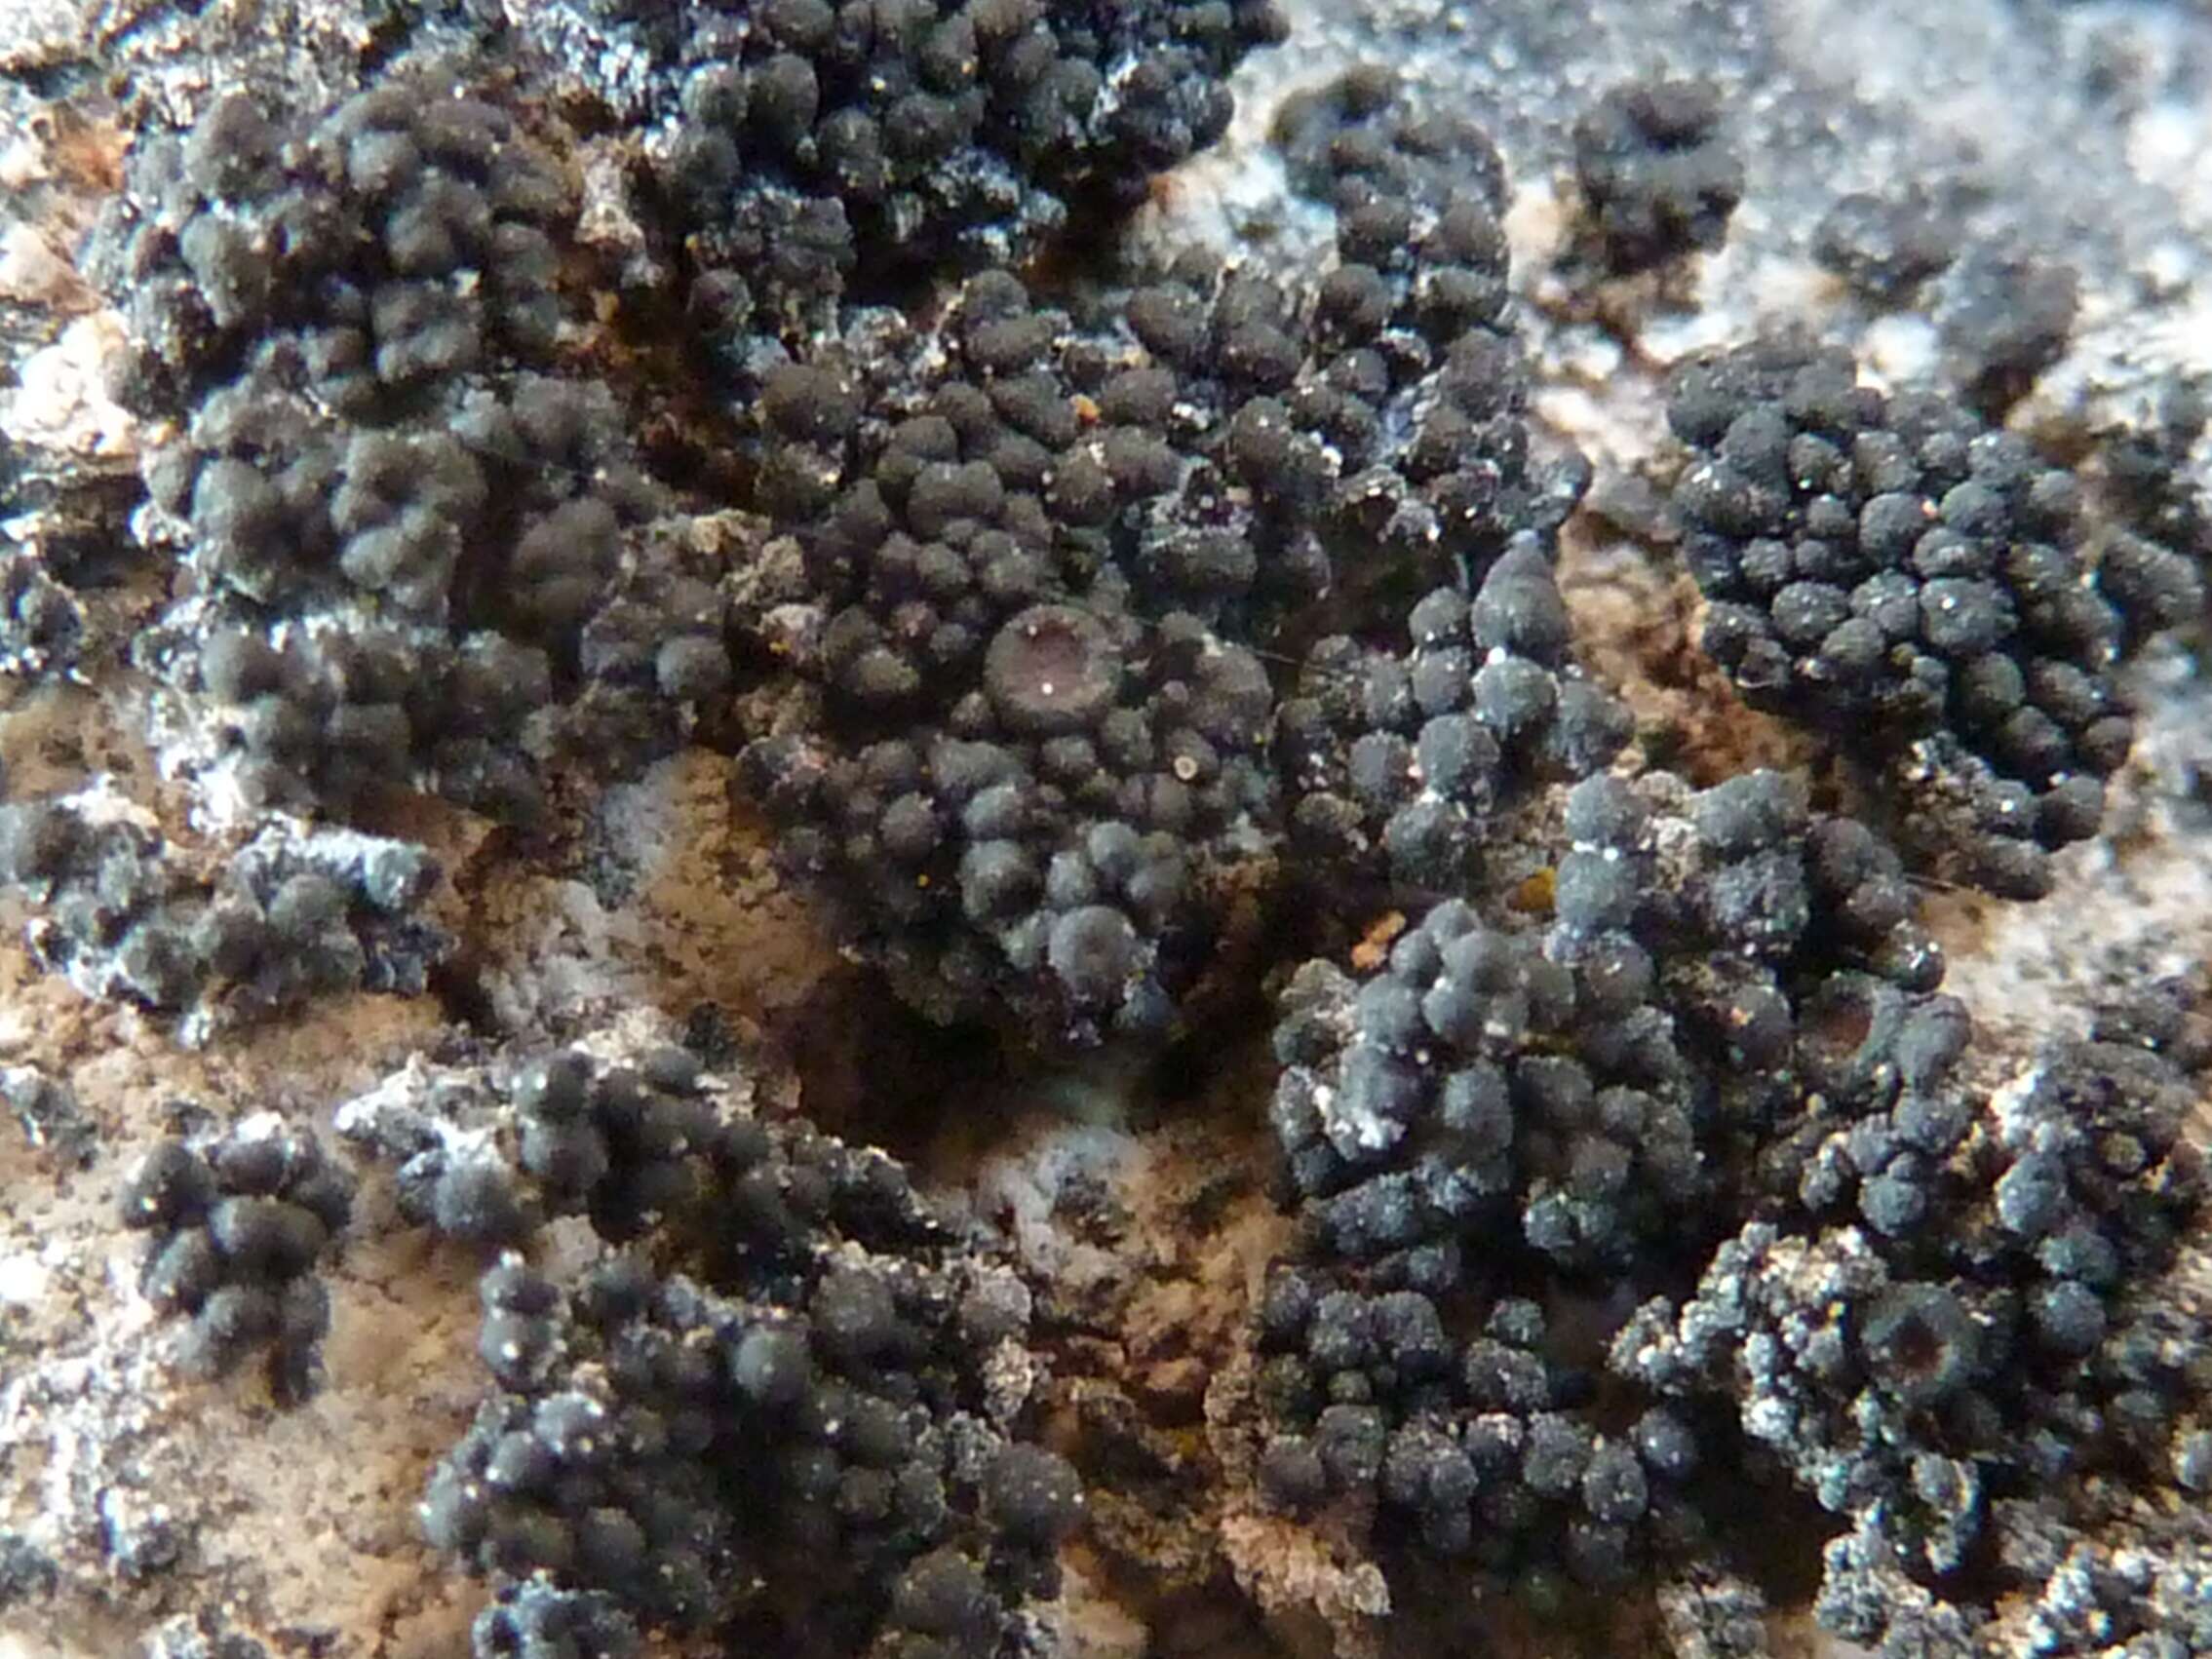 Image of synalissa lichen